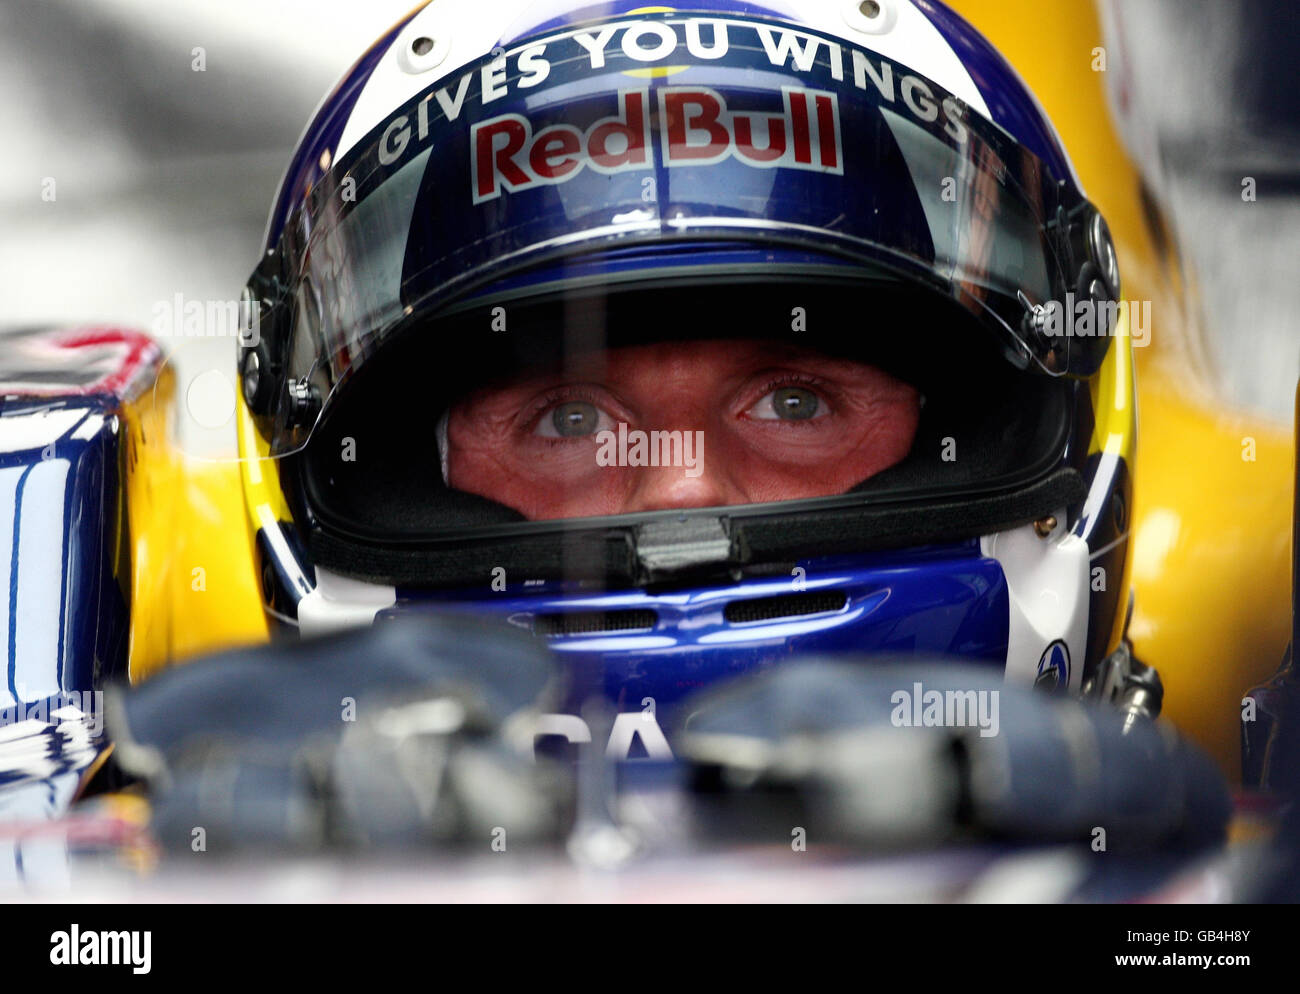 David Coulthard, en Grande-Bretagne, est assis dans sa voiture lors d'une séance d'entraînement à Monza, en Italie. Banque D'Images